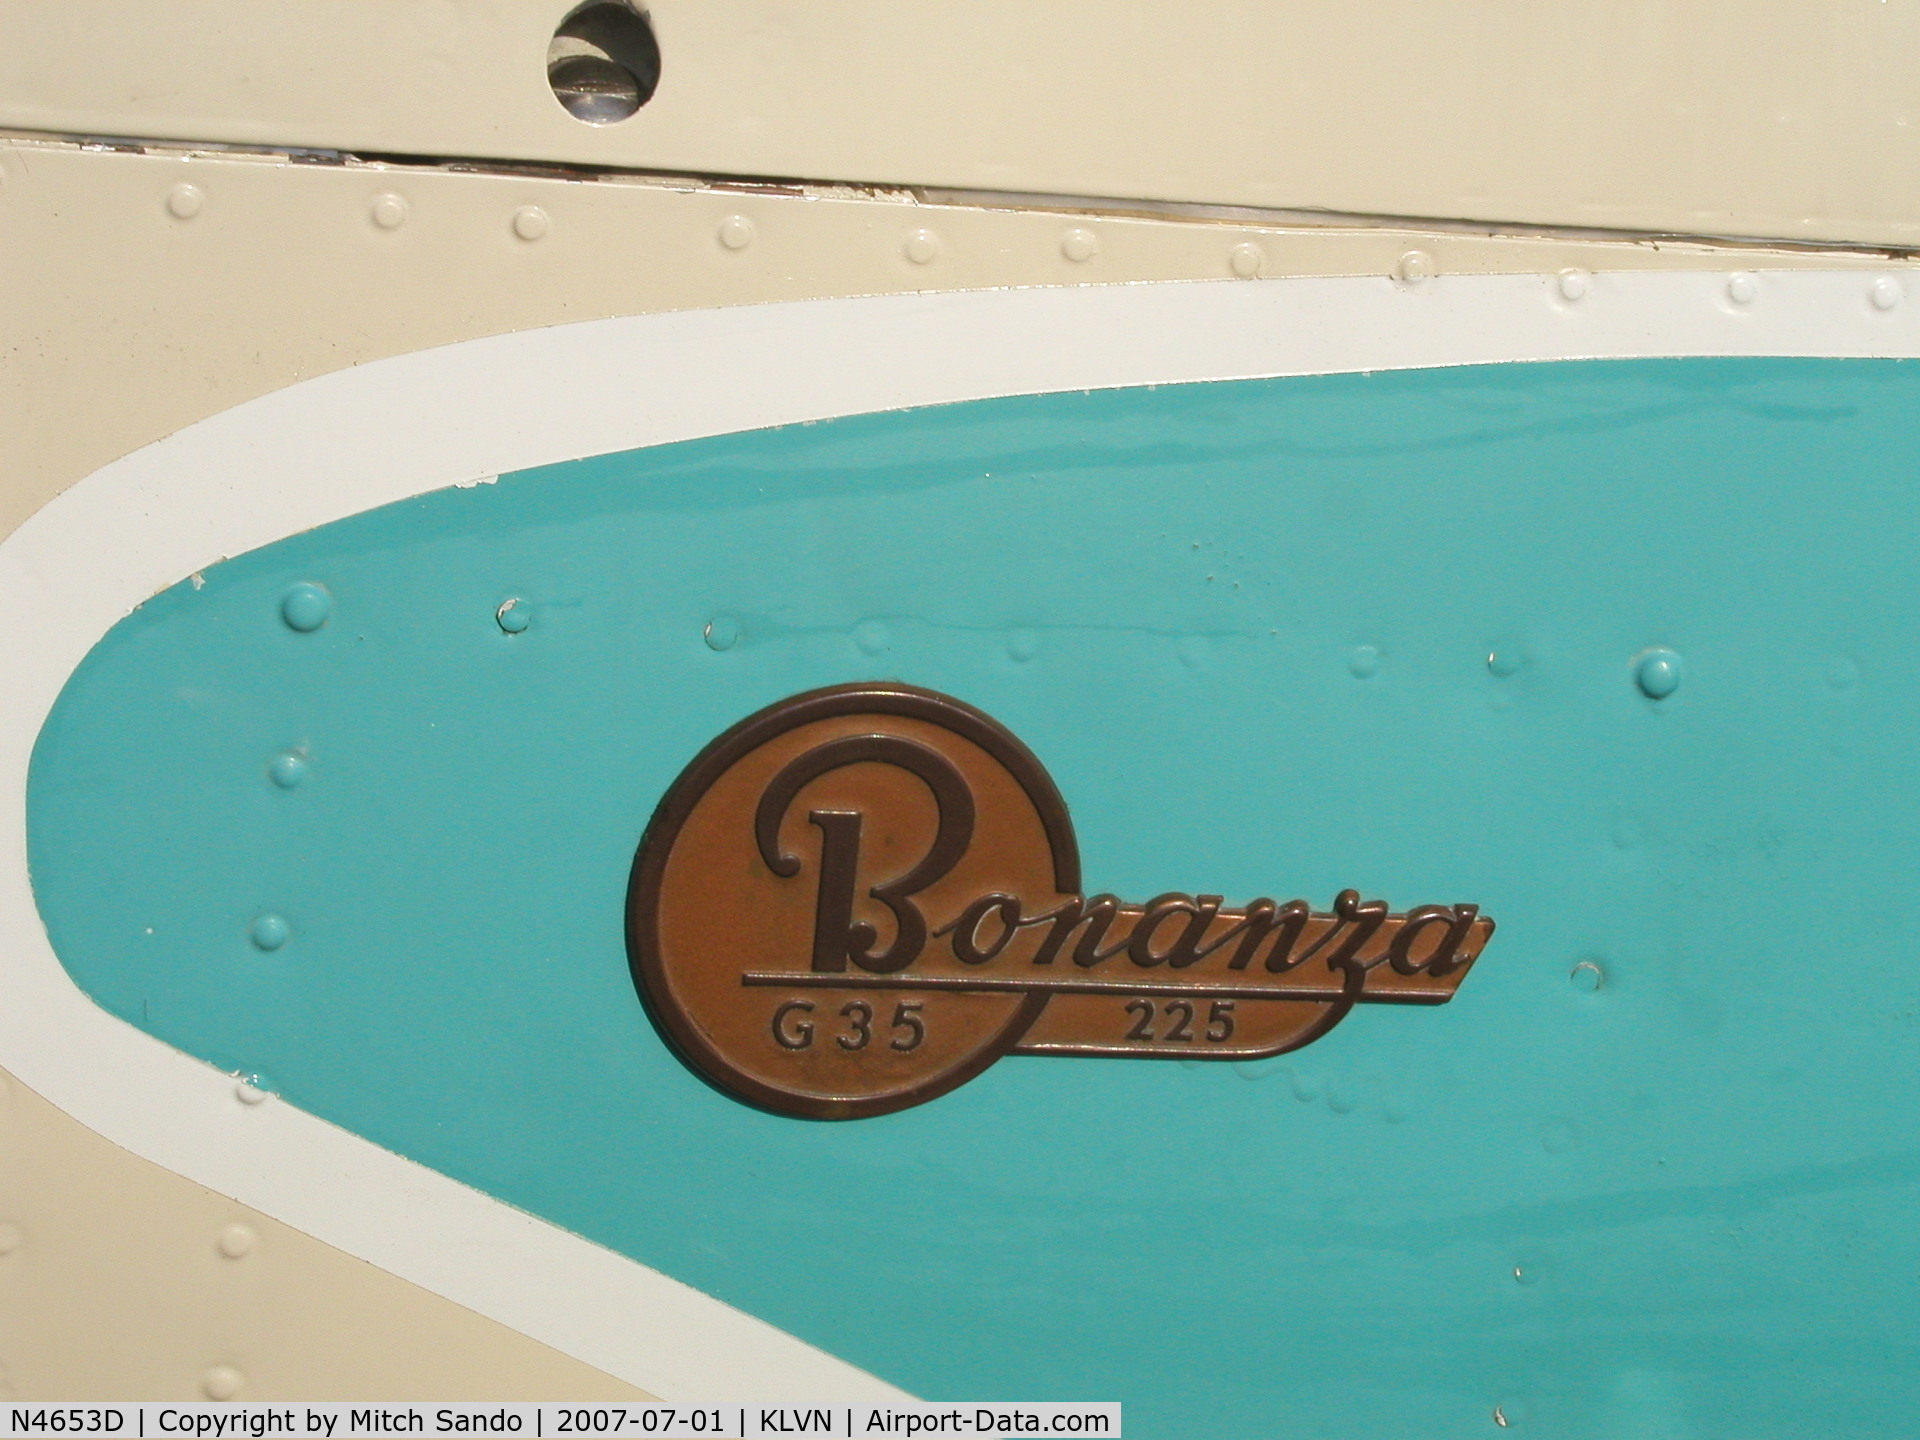 N4653D, 1956 Beech G35 Bonanza C/N D-4852, Beechcraft Bonanza emblem.